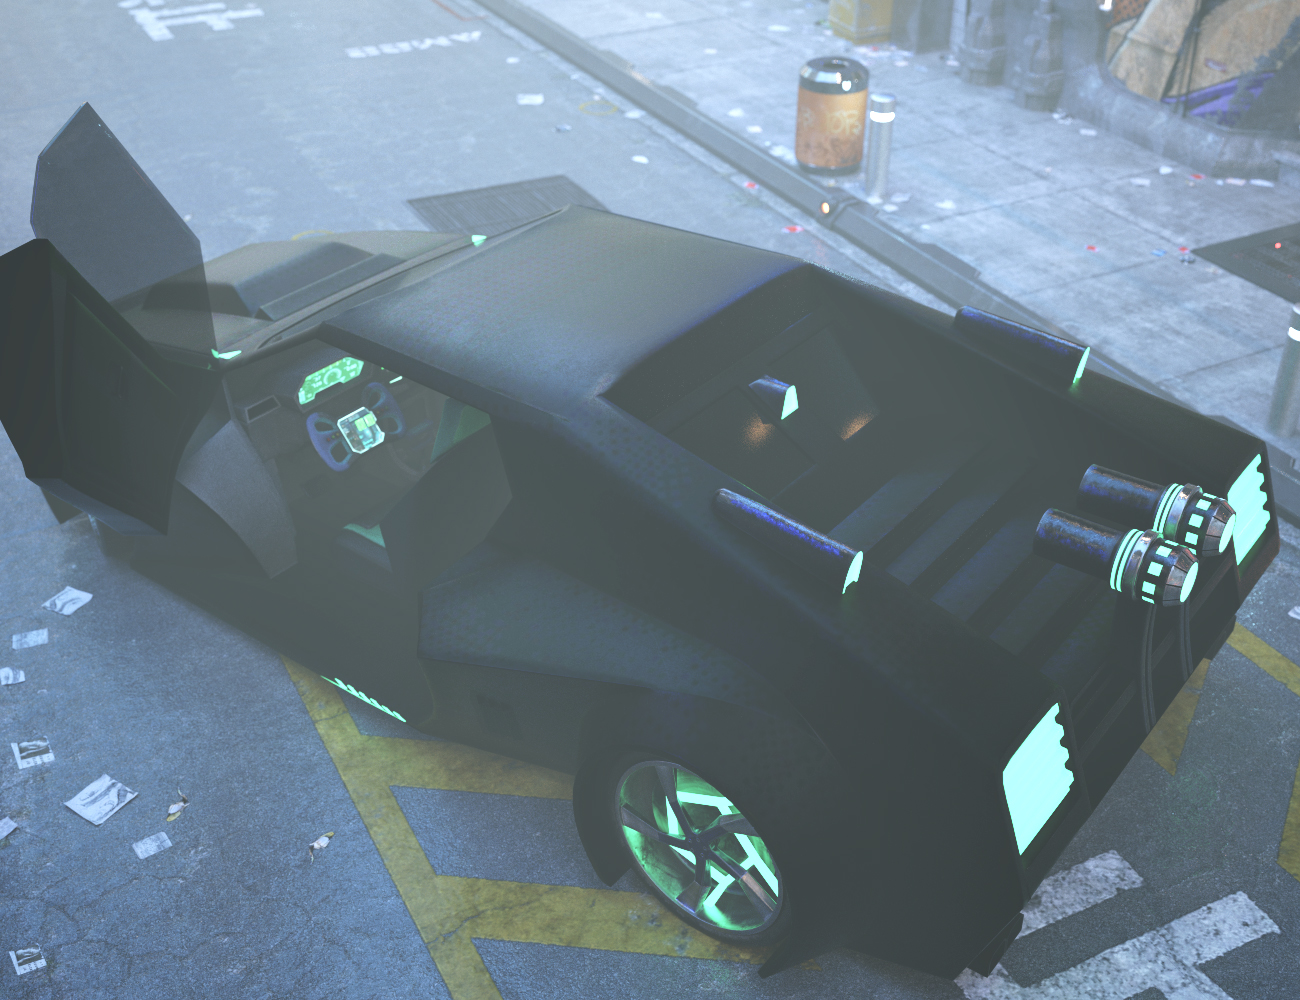 Cyberpunk Sports Car by: Xivon, 3D Models by Daz 3D